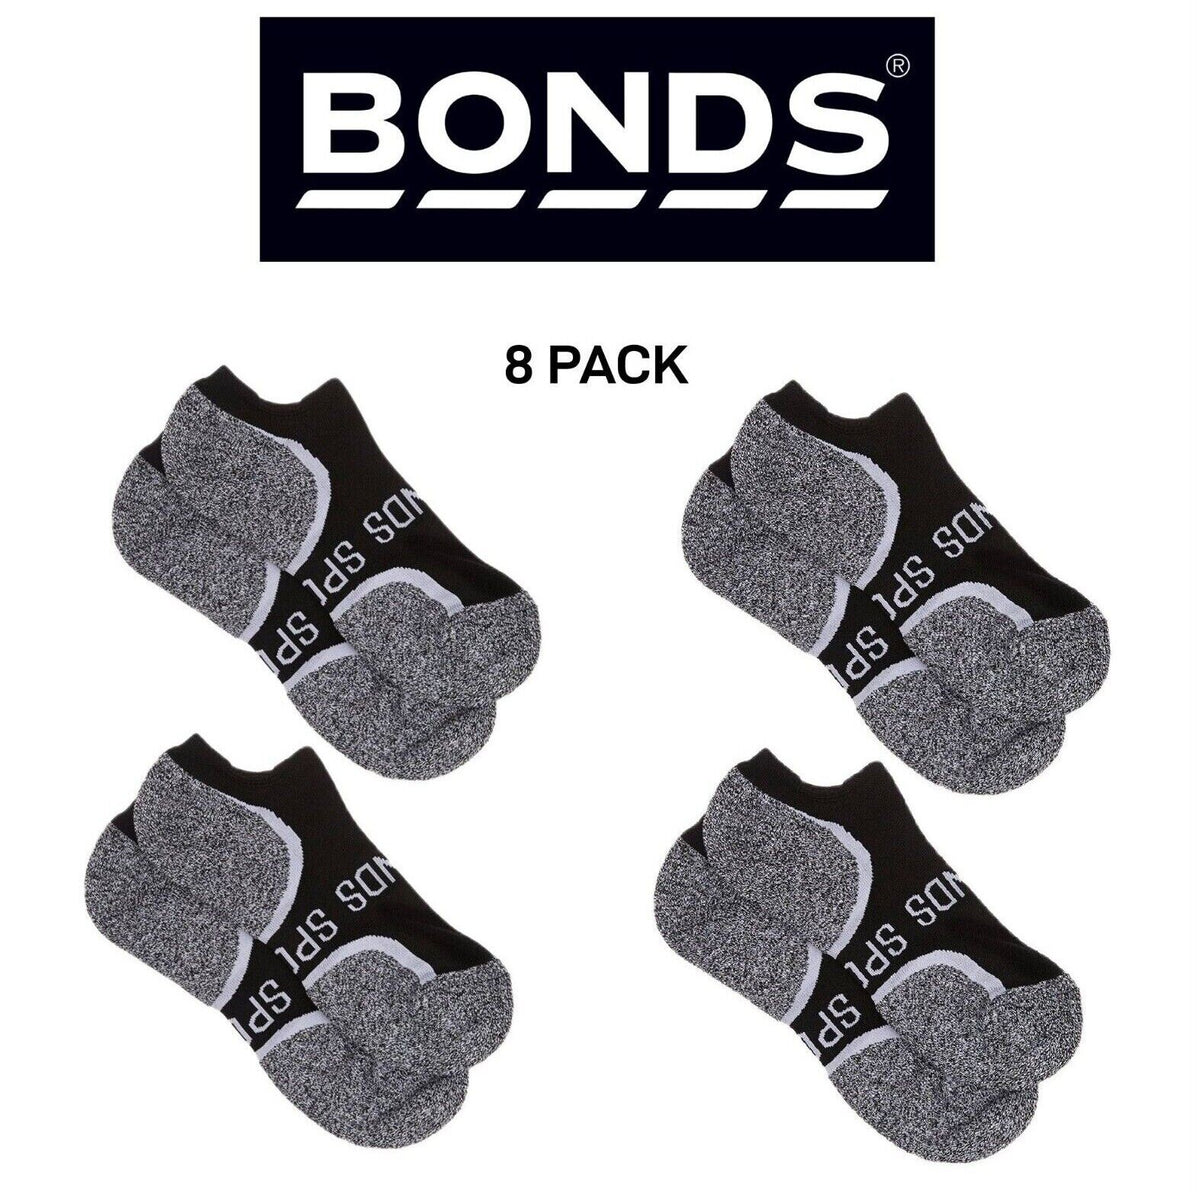 Bonds Mens Ultimate Comfort Crew Socks Soft Comfortable Low Cut 8 Pack SXVB2N